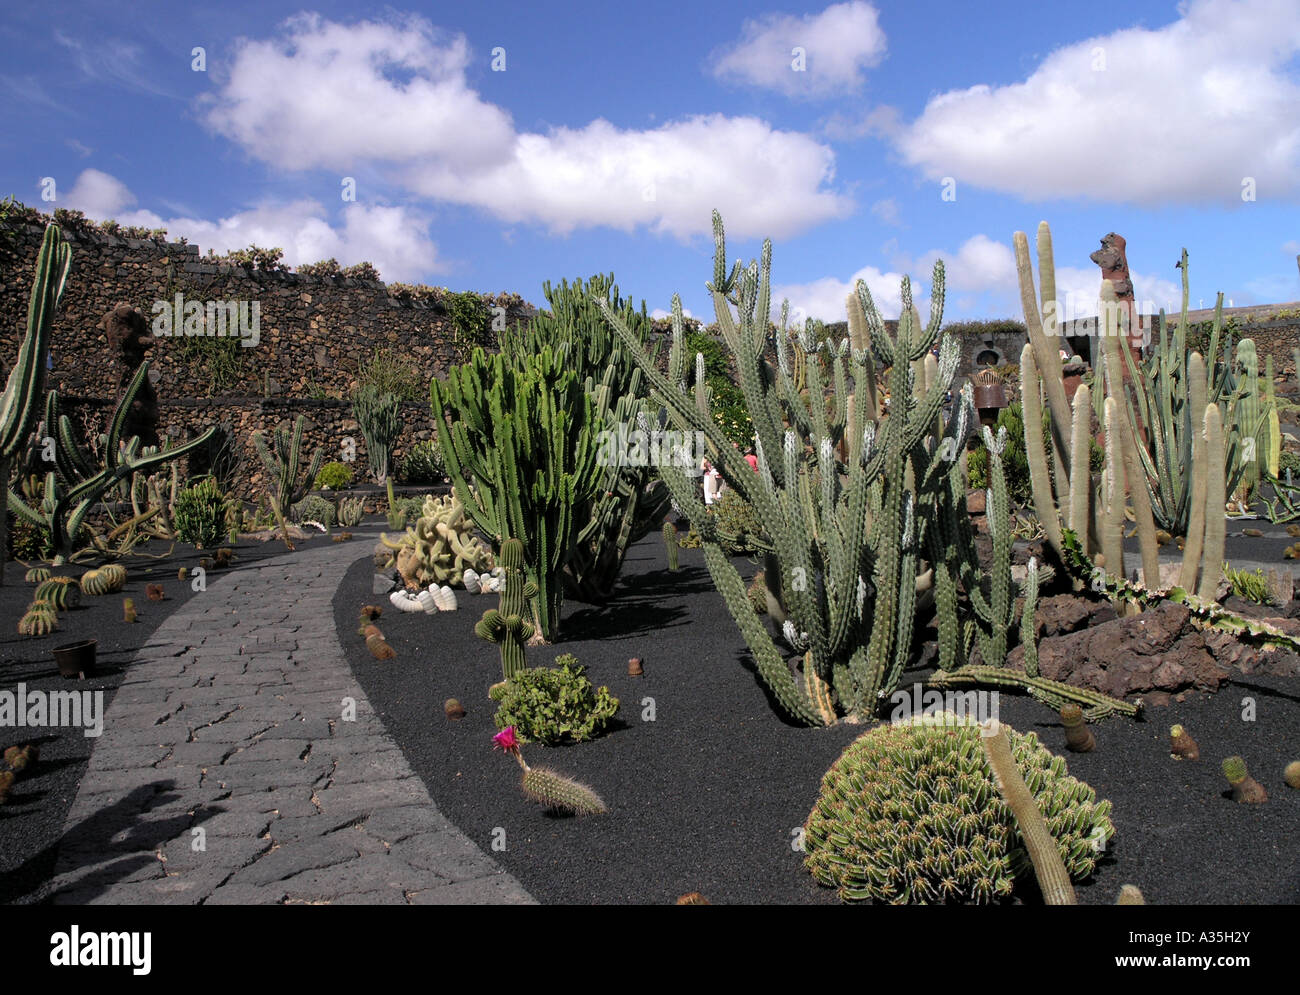 Jardin de cactus lanzarote Stock Photo